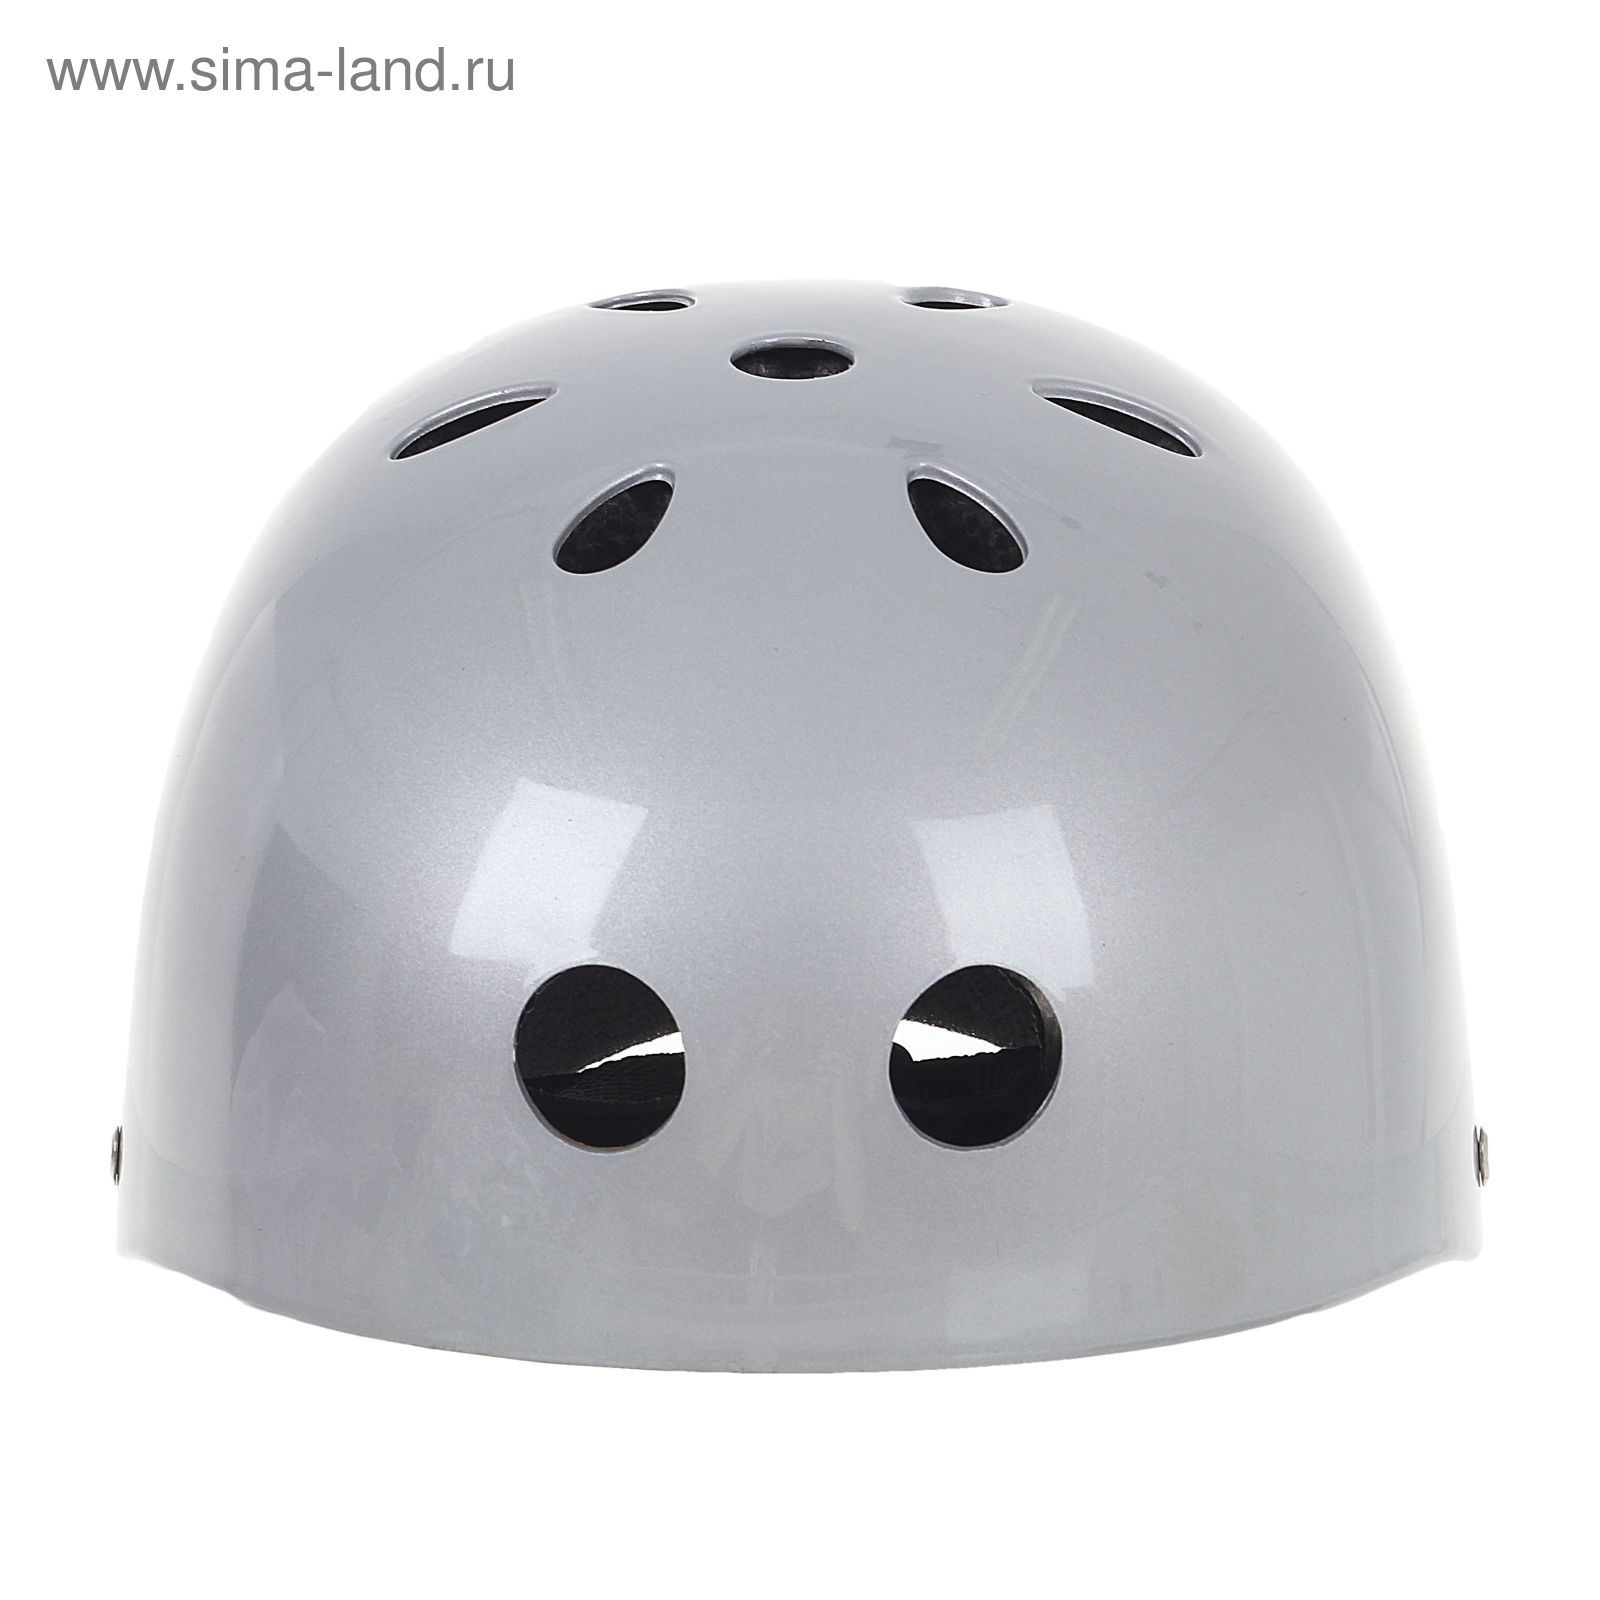 Шлем велосипедиста взрослый ОТ-GK1, глянцевый, серебро d=56 см